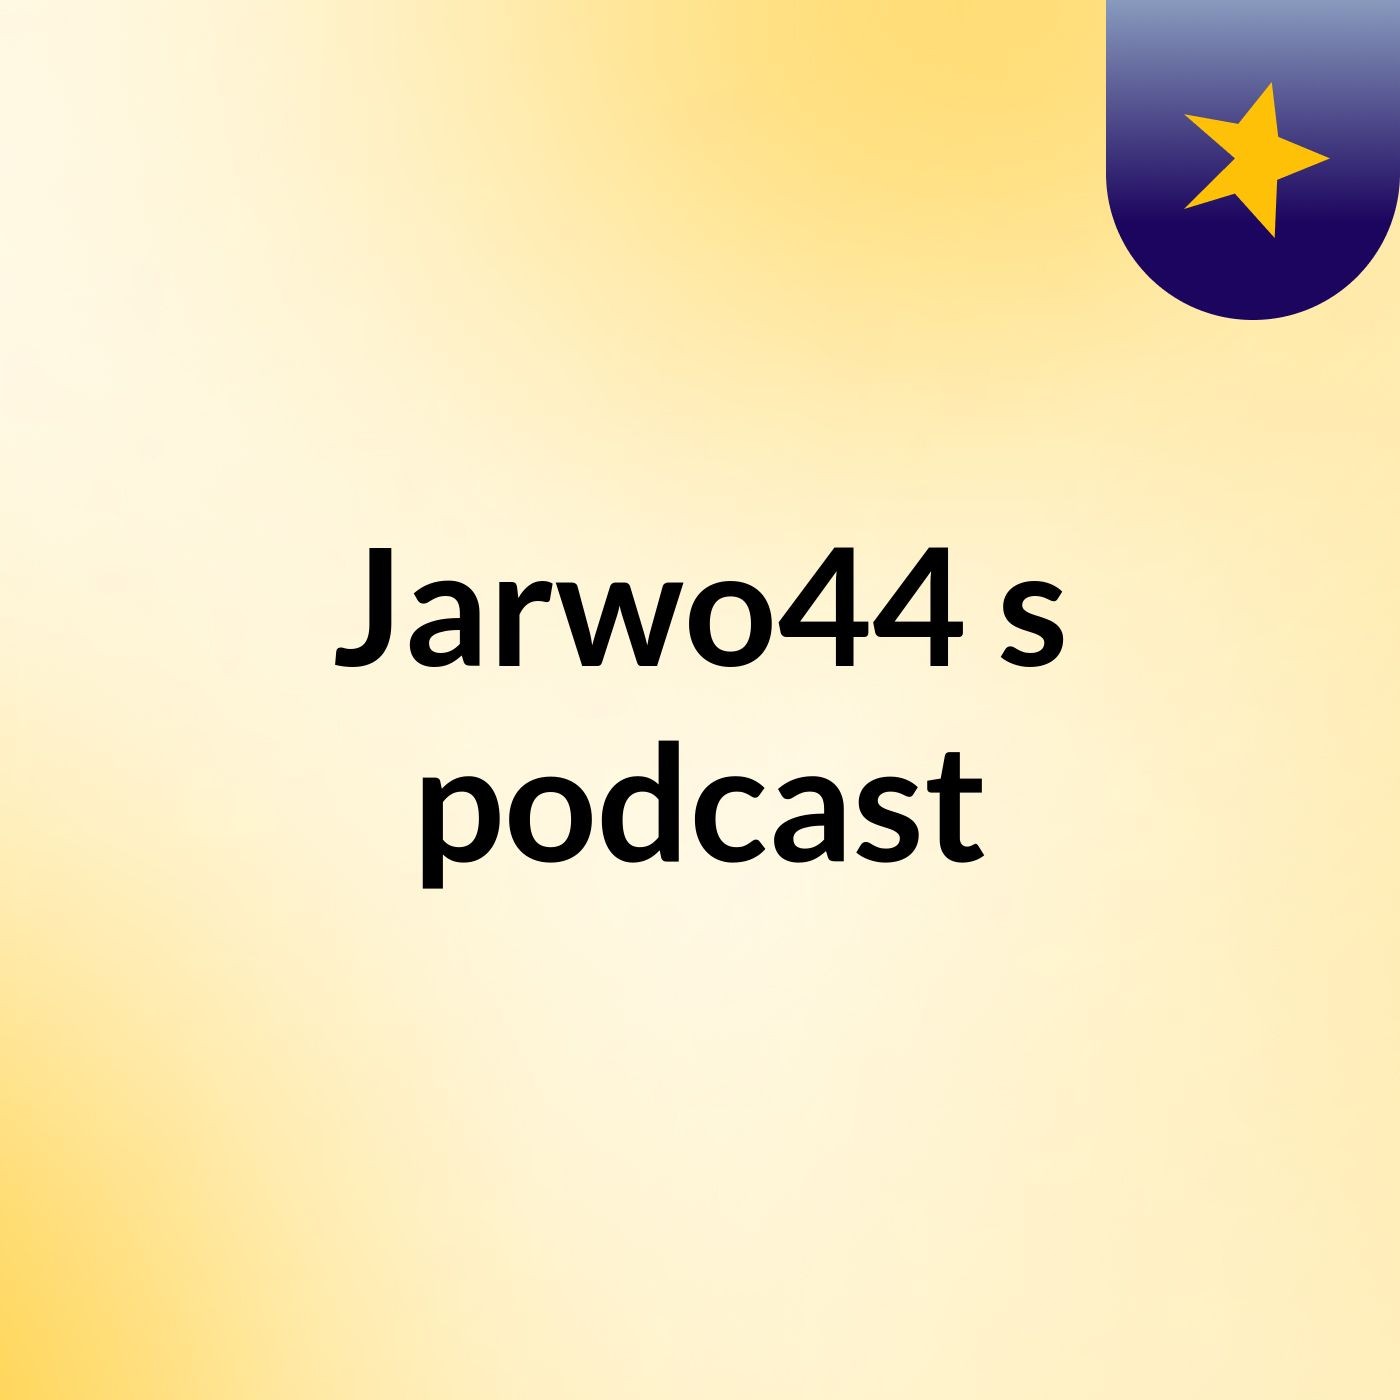 Episode 7 - Jarwo44's podcast